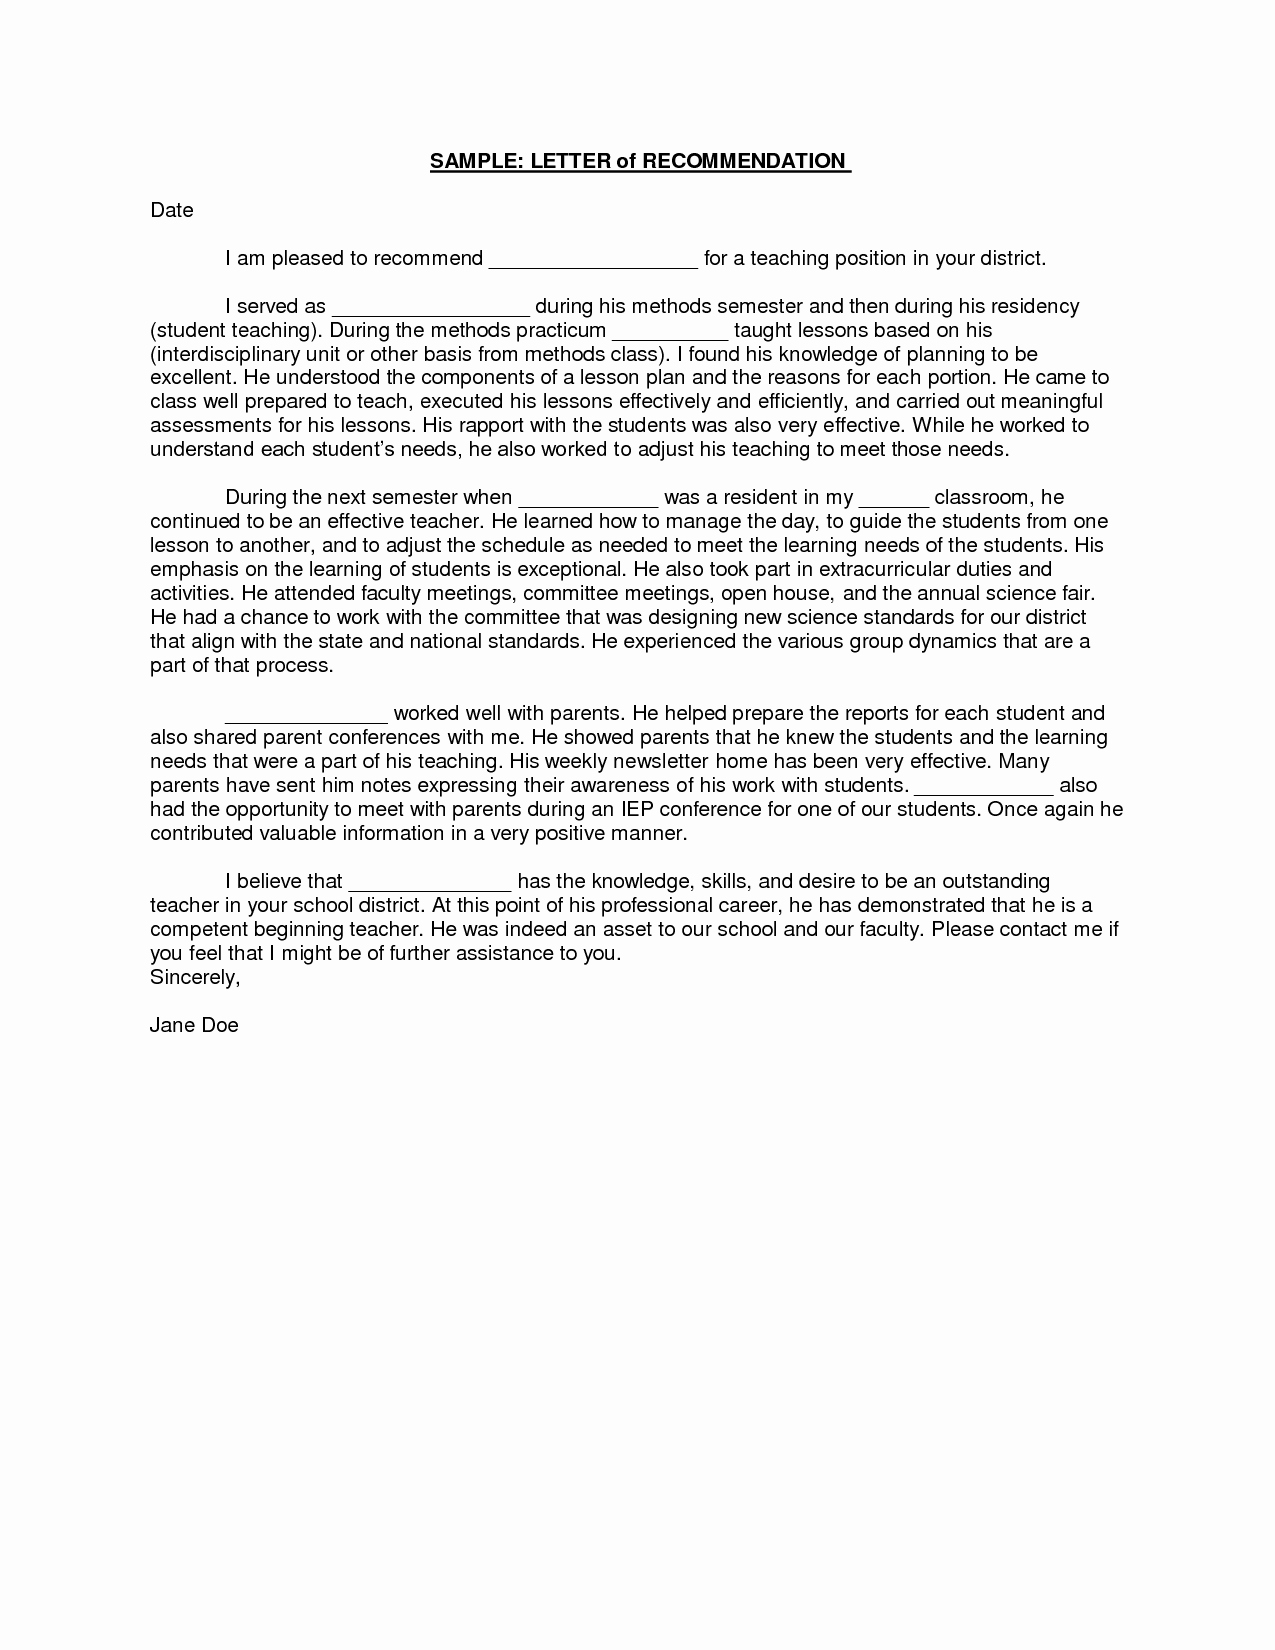 Letter Of Recommendation for Professorship Lovely Sample Student Teacher Re Mendation Letters V9nqmvof